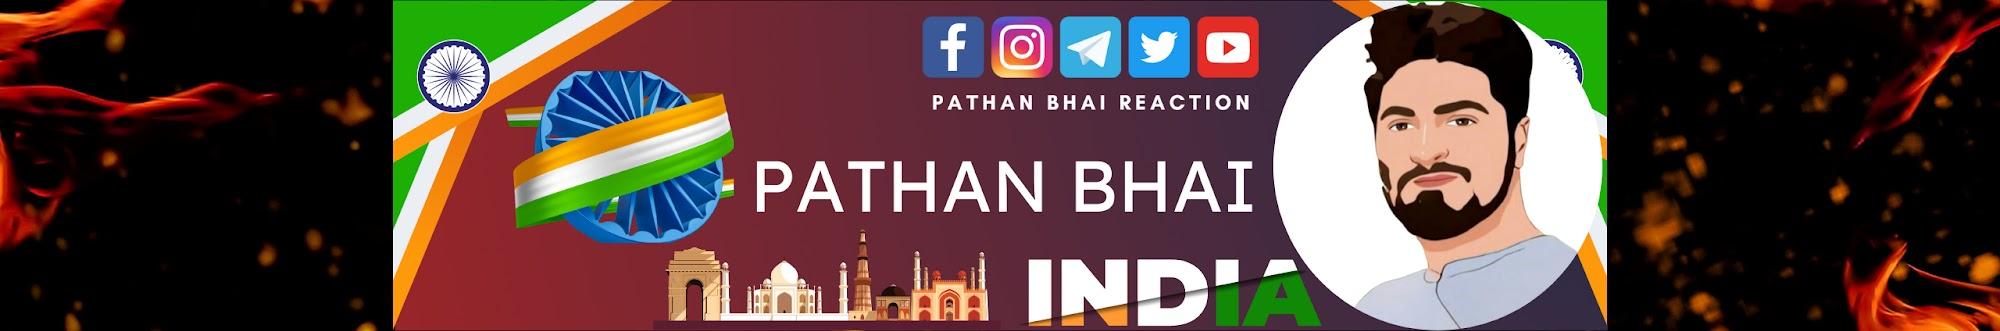 Pathan Bhai